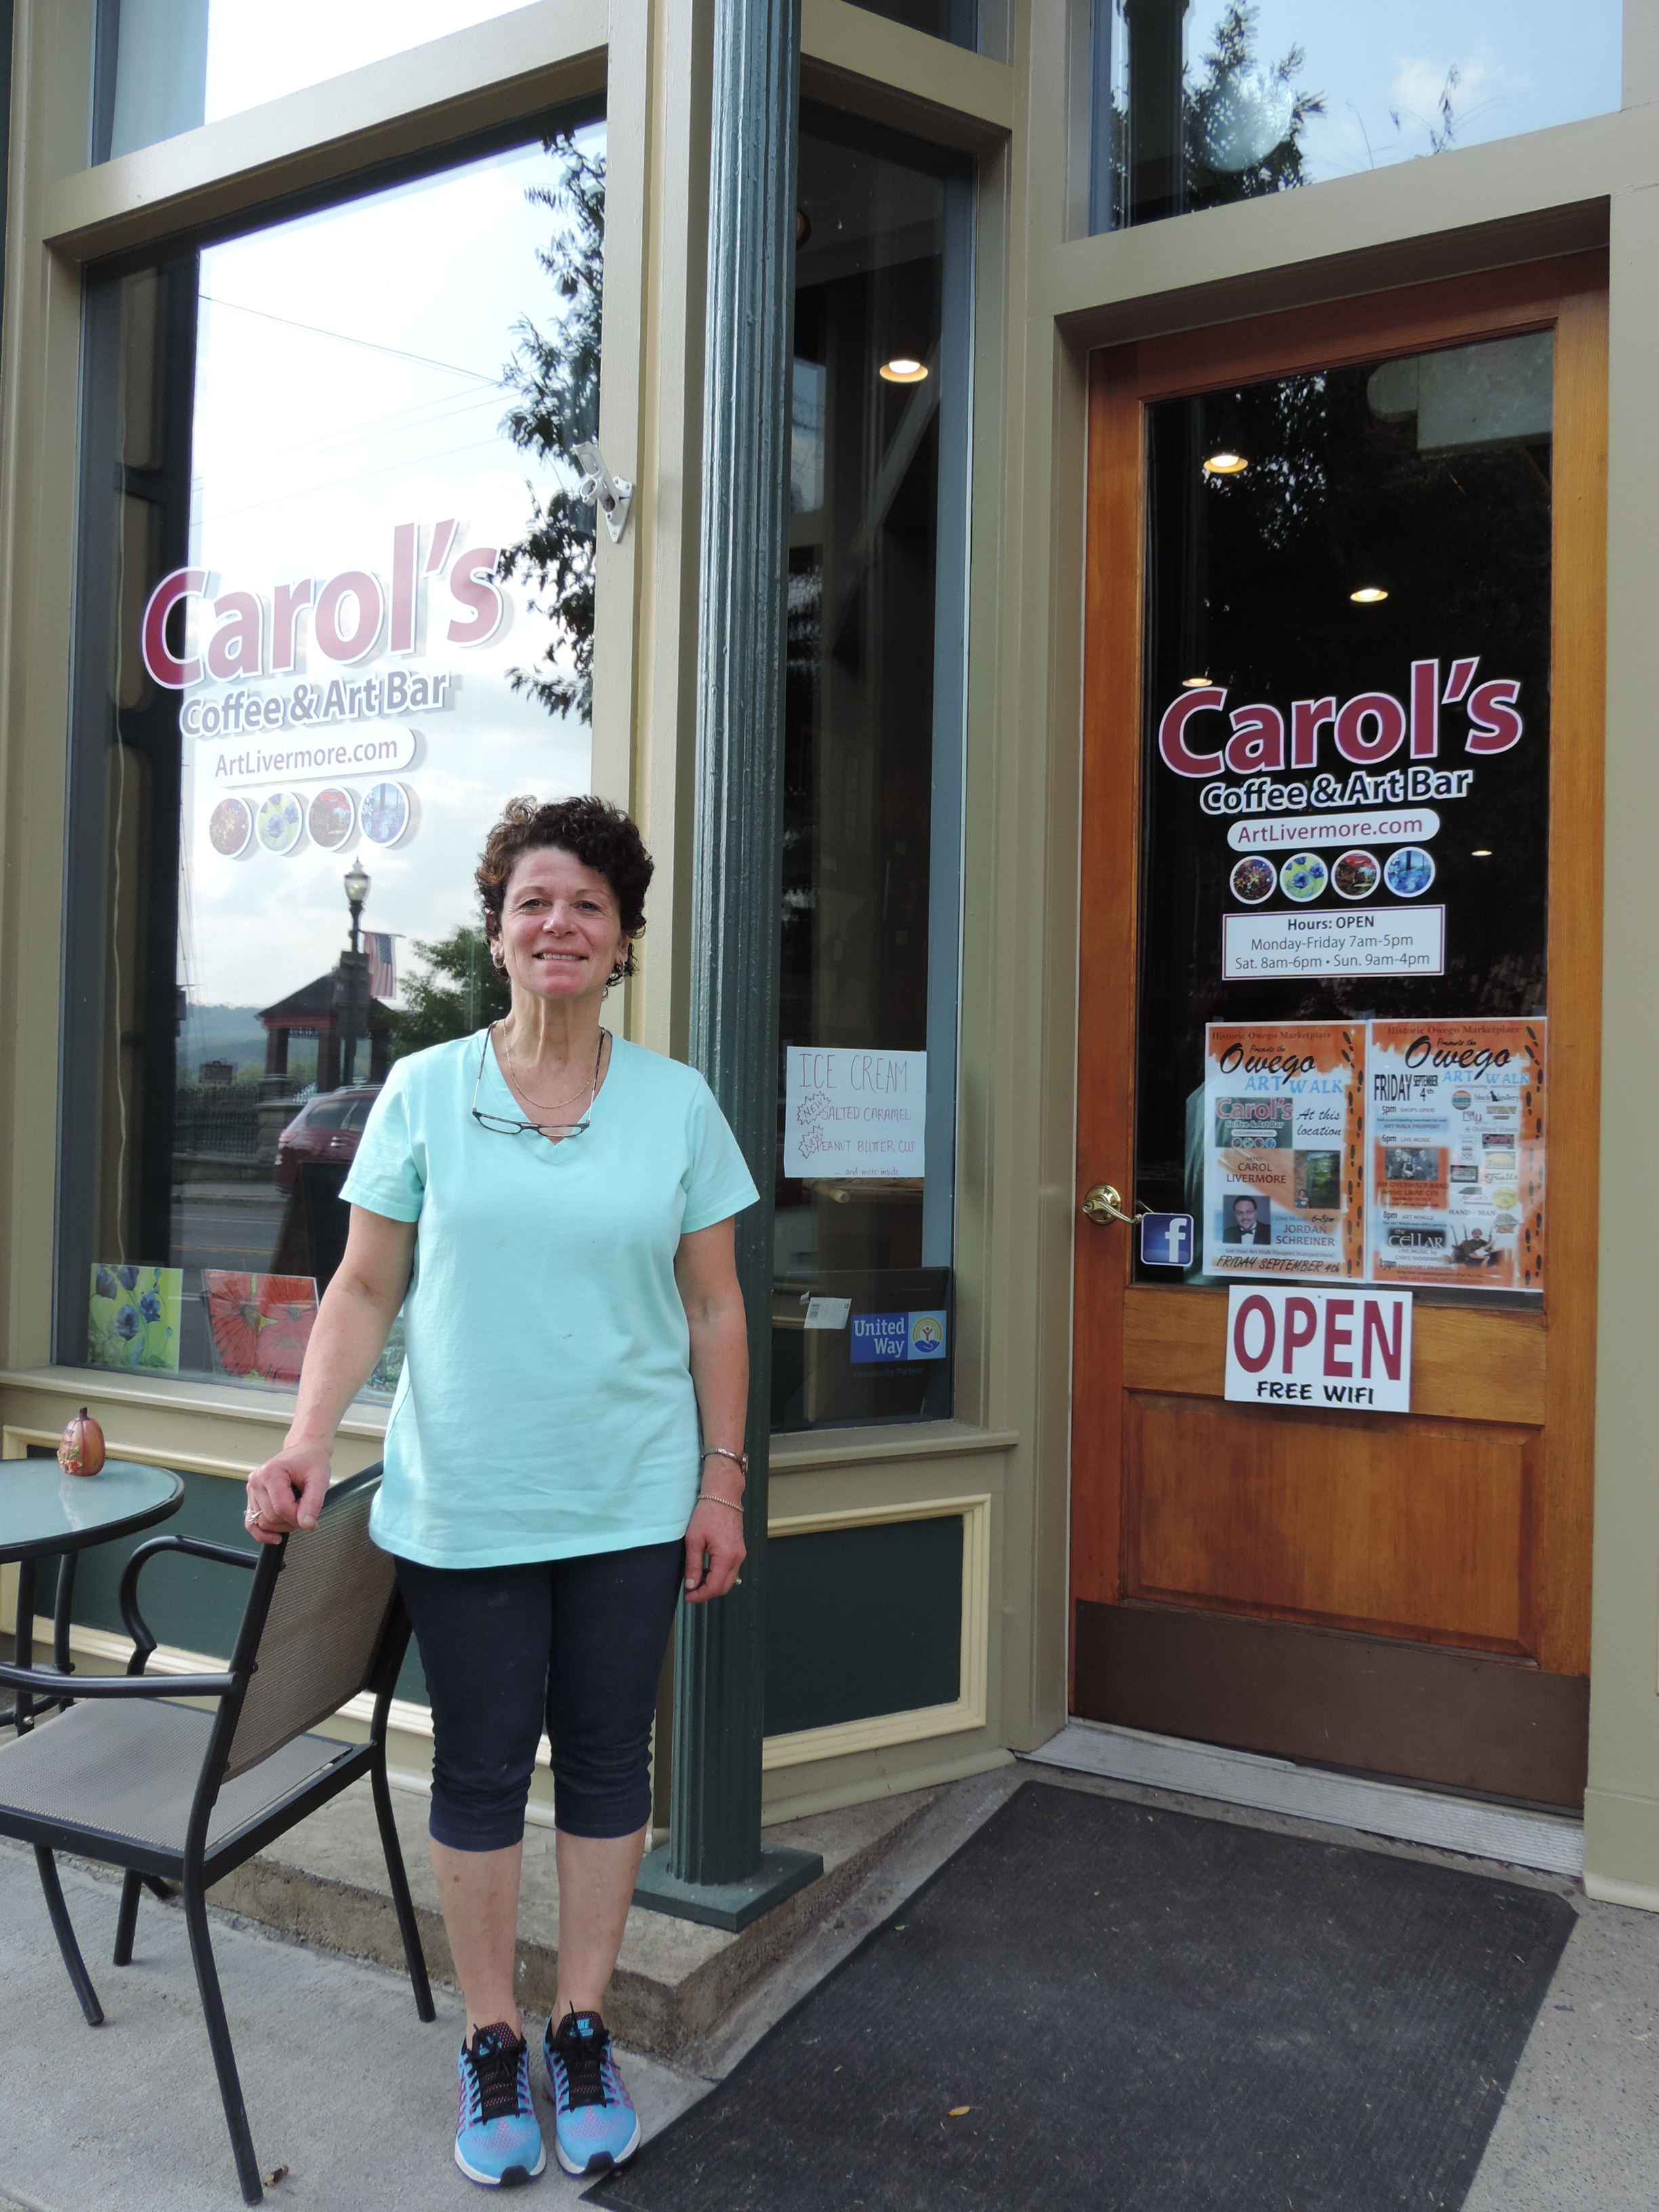 Carol’s Coffee & Art Bar opens in Owego